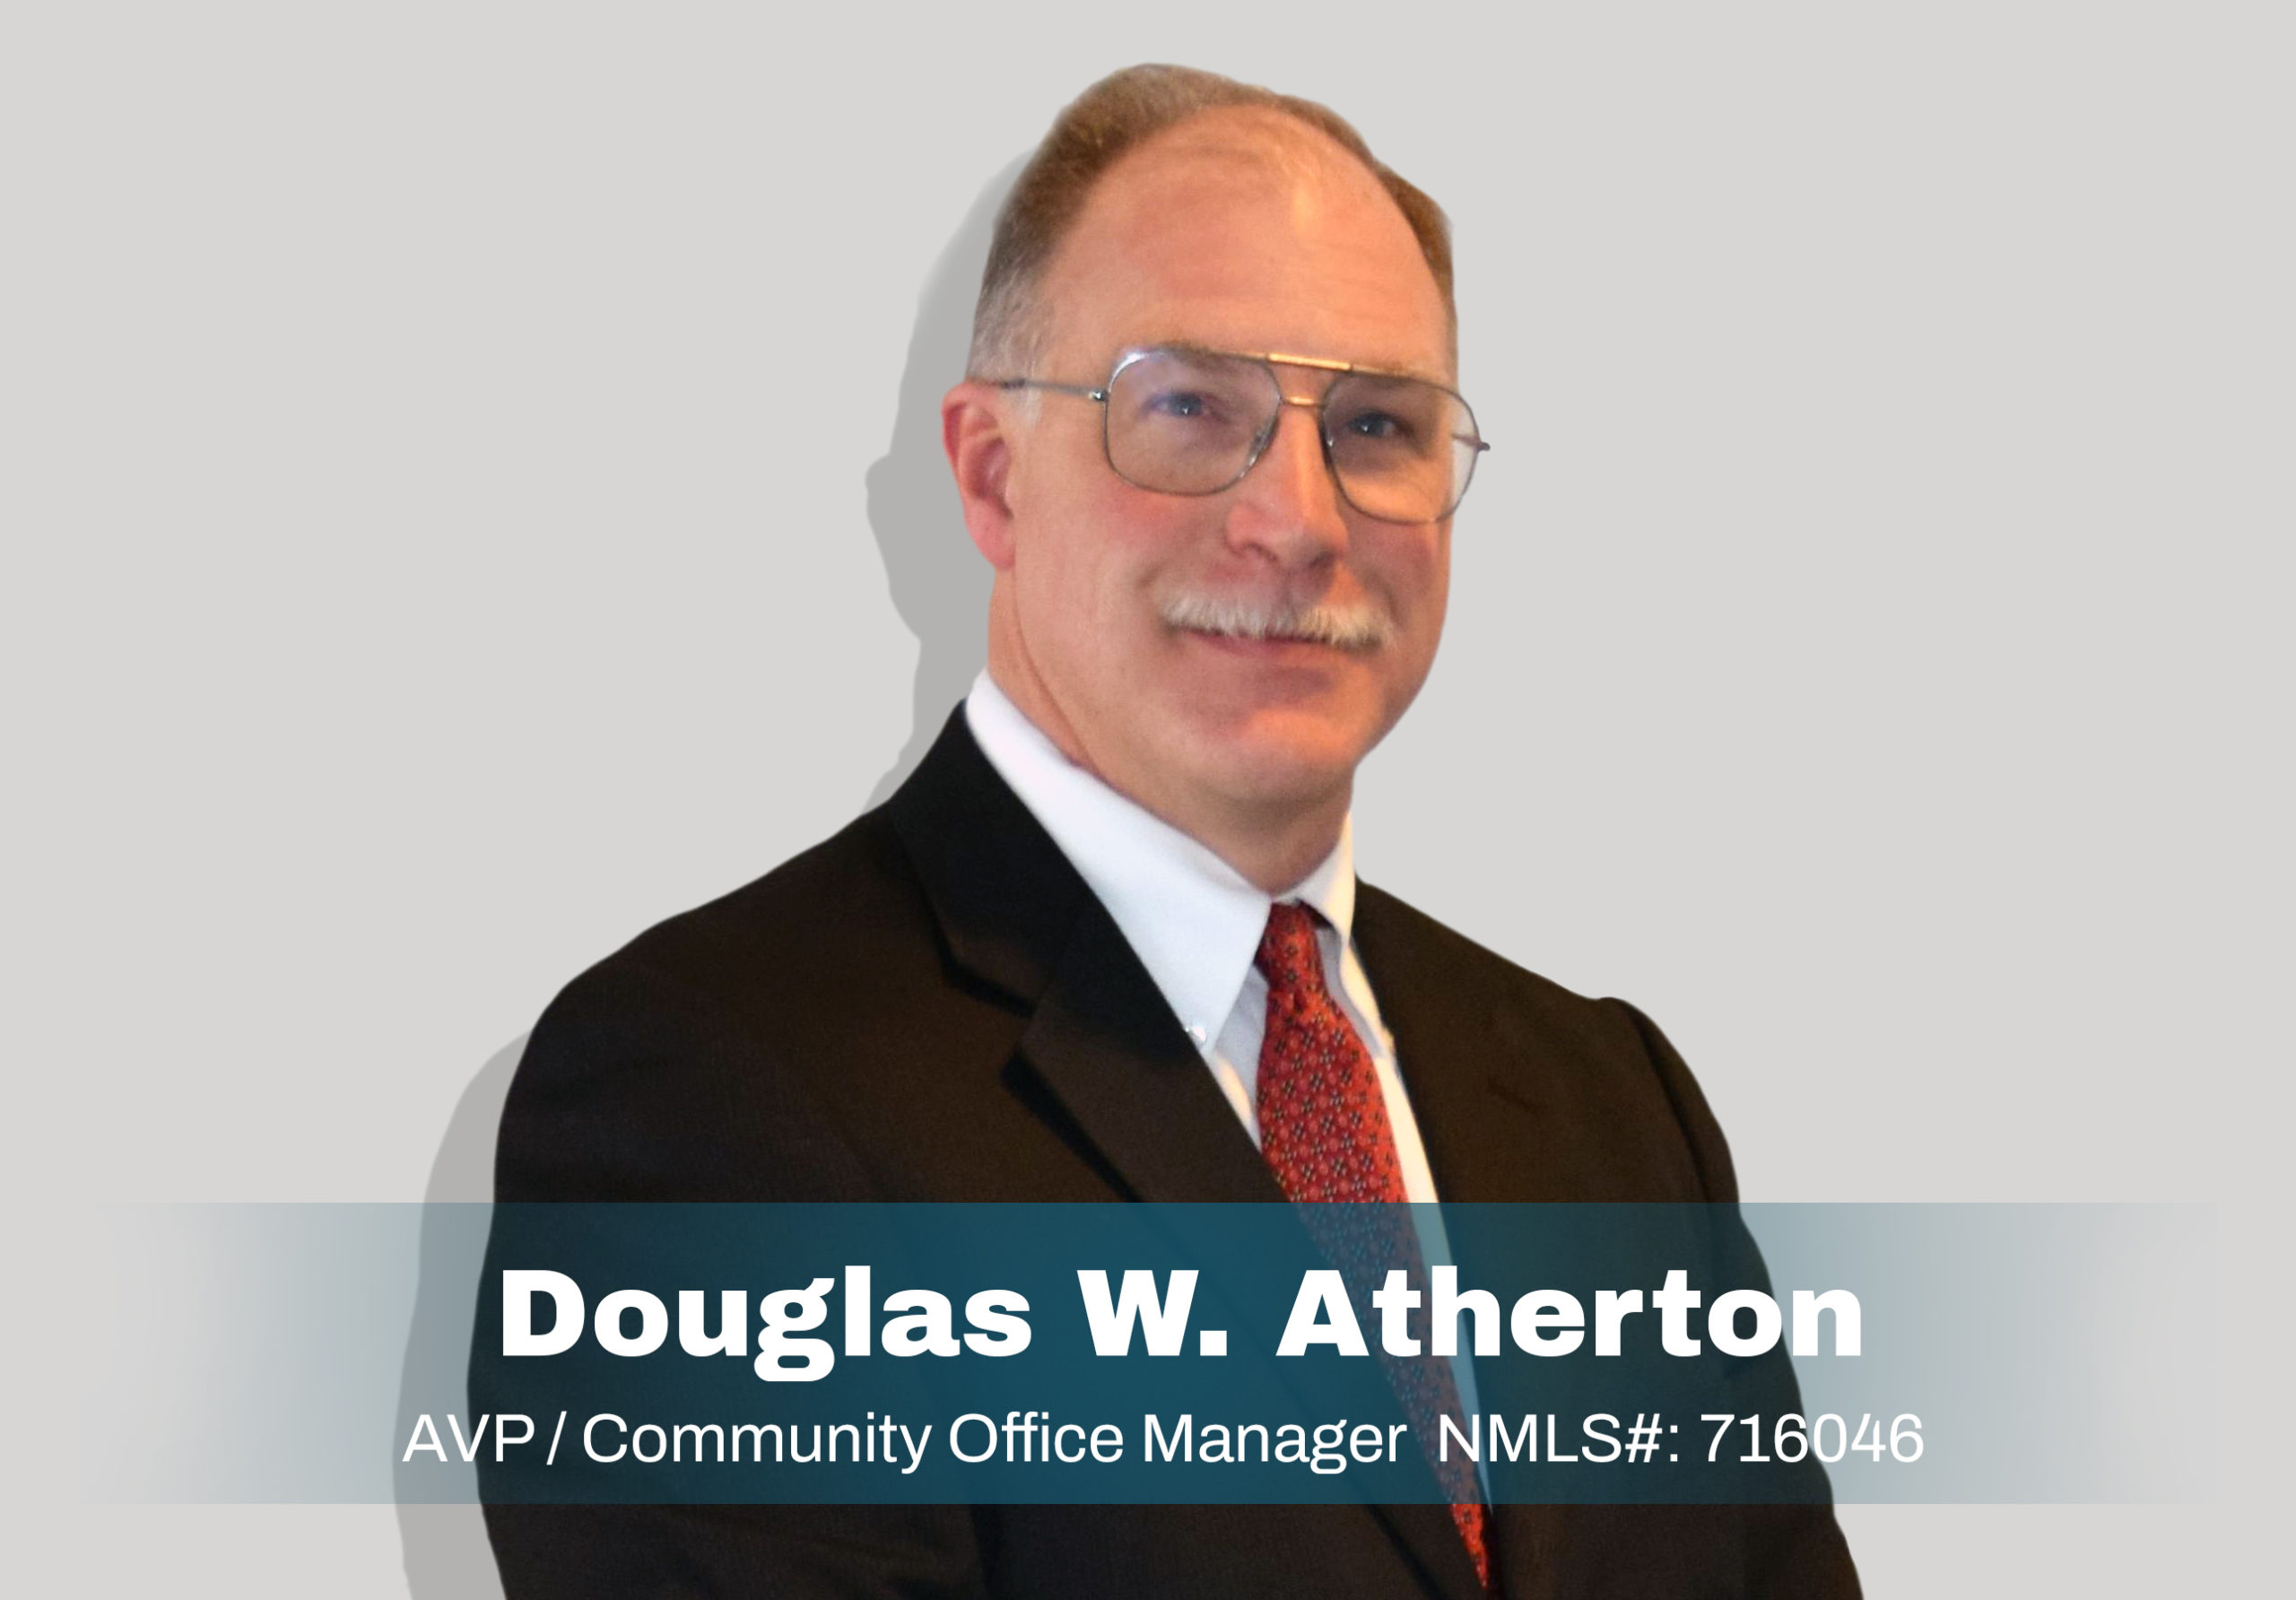 Douglas W. Atherton